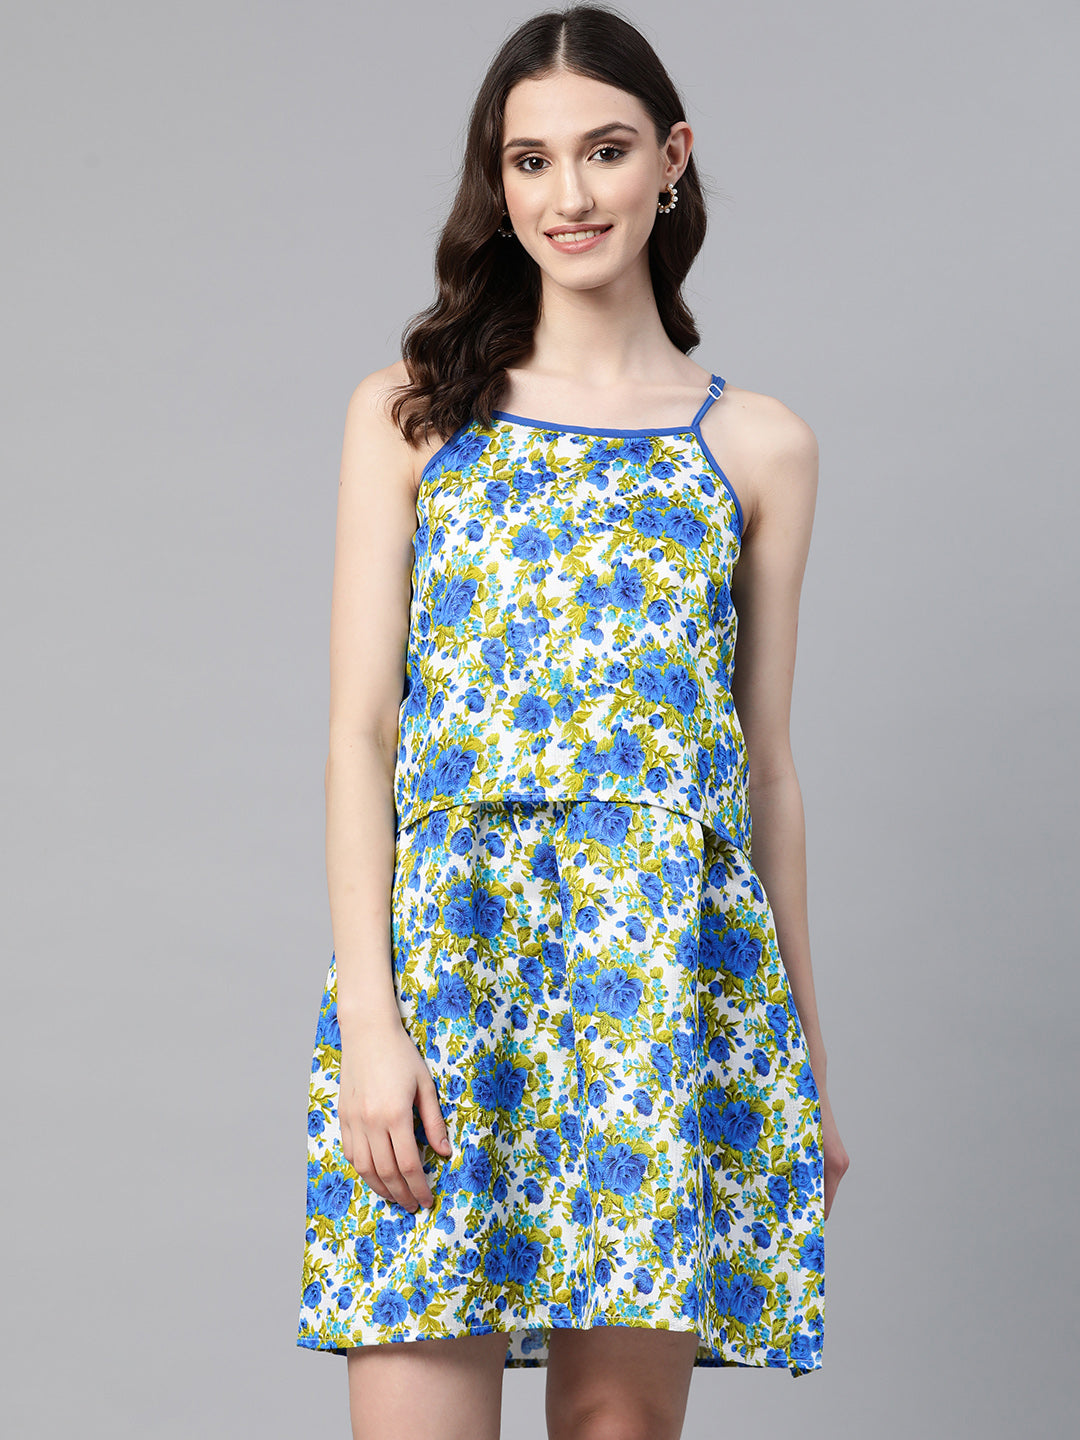 Women's Summer Floral Dress Off Shoulder Short Sleeve Split A-Line Dresses  | eBay